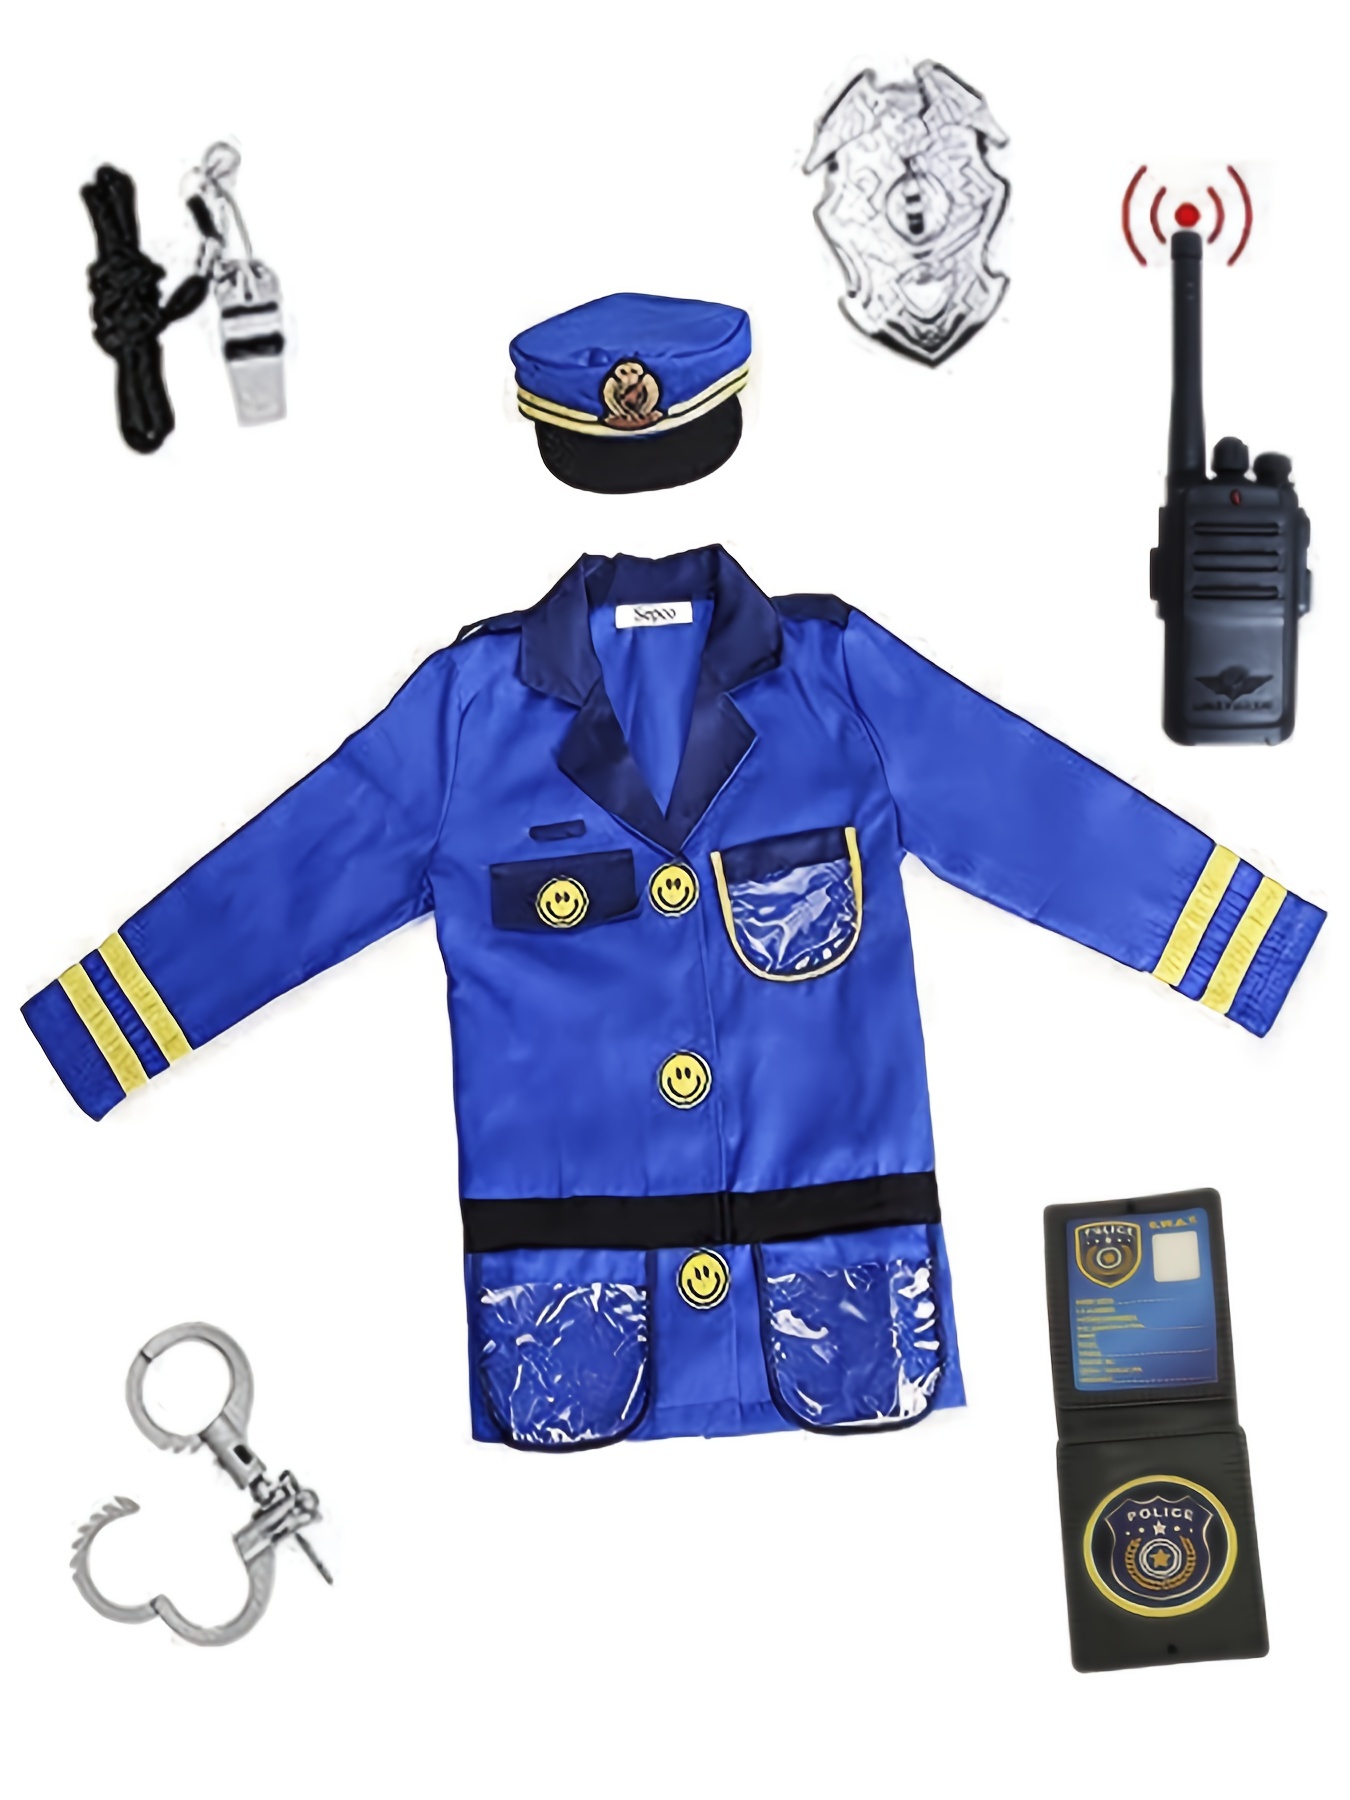 Comprar Disfraz policía local Officer 3-4 años Disfraz infantil online